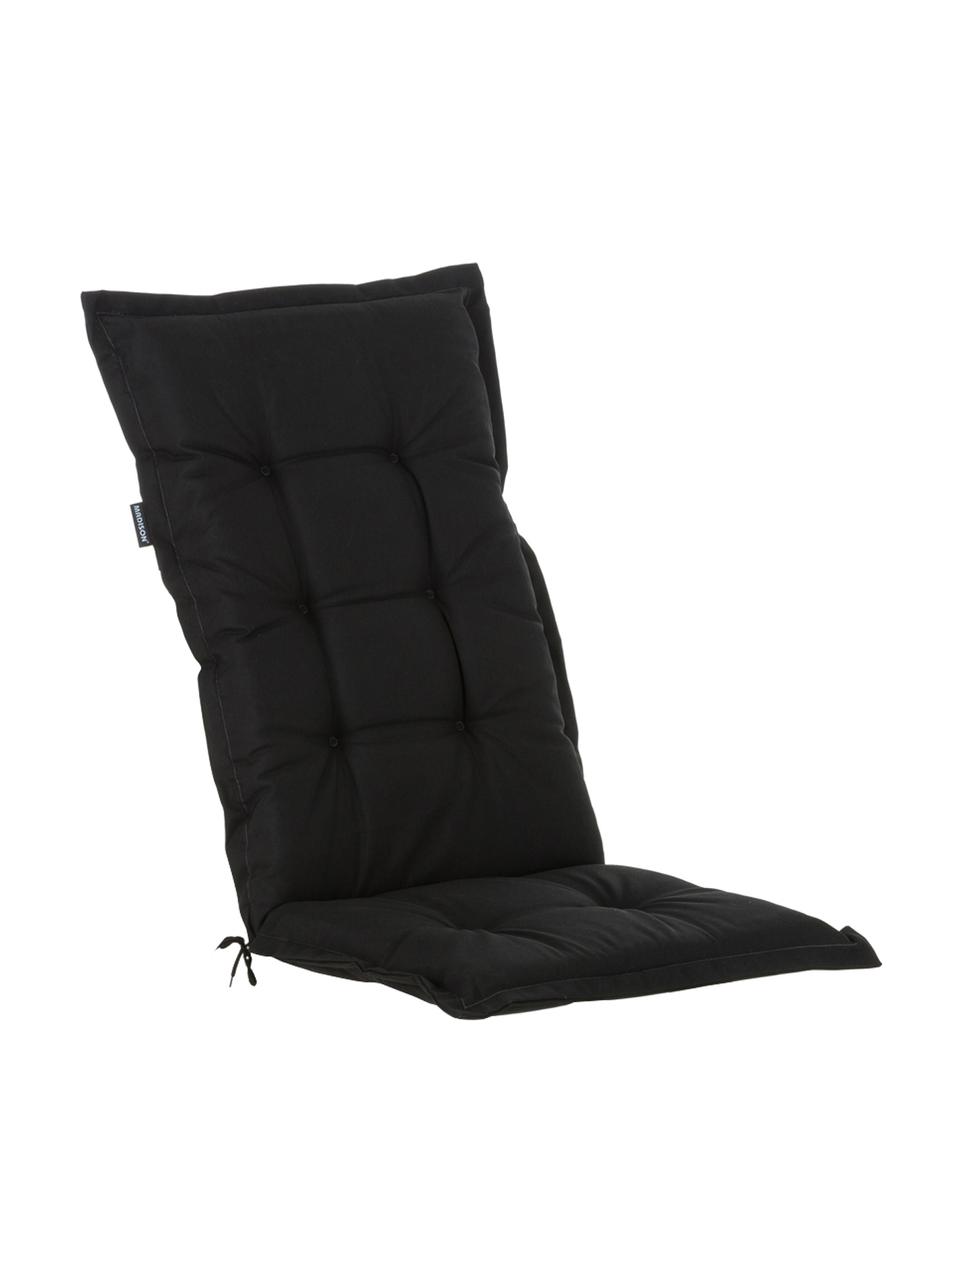 Einfarbige Hochlehner-Stuhlauflage Panama in Schwarz, Bezug: 50% Baumwolle, 50% Polyes, Schwarz, 50 x 123 cm